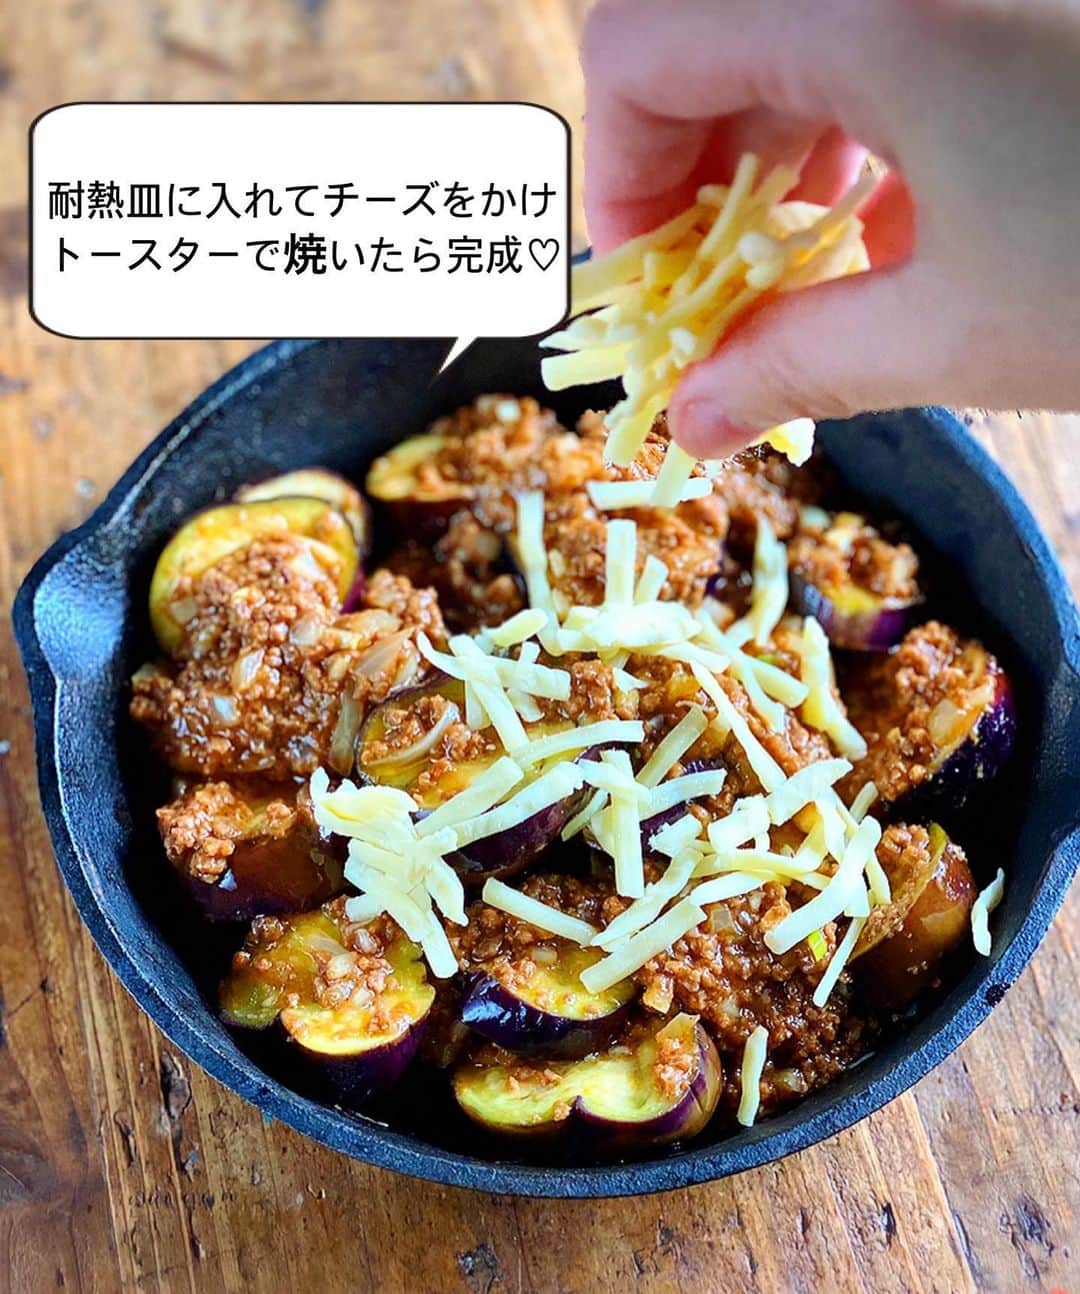 Mizuki【料理ブロガー・簡単レシピ】さんのインスタグラム写真 - (Mizuki【料理ブロガー・簡単レシピ】Instagram)「・﻿ 【レシピ】ーーーーーーーーーー﻿ ♡レンジ&トースターで♡﻿ なすミートソースのチーズ焼き﻿ ーーーーーーーーーーーーーーー﻿ ﻿ ﻿ ﻿ おはようございます(*^^*)﻿ ﻿ 今日ご紹介させていただくのは﻿ なすミートソースのチーズ焼き♡﻿ レンジ&トースターだけで作れて﻿ 見た目は豪華に仕上がりますよ〜♩﻿ (そこがミソ😂)﻿ ﻿ 作り方は超簡単(*´艸`)﻿ ミートソースはレンジで一発！﻿ あとはチーズをのせて﻿ トースターで焼いたらもう完成♡﻿ ﻿ これおすすめなので﻿ よかったらお試し下さいね(*^^*)﻿ ﻿ ﻿ ﻿ ーーーーーーーーーーーーーーーーーーーー﻿ 【2人分】﻿ なす...2本﻿ ●合びき肉...150g﻿ ●玉ねぎ(みじん切り)...1/4個﻿ ●ケチャップ...大3﻿ ●焼肉のたれ・ウスターソース...各大1﻿ ●コンソメ・薄力粉...各小1/2﻿ ピザ用チーズ...50g﻿ ﻿ 1.なすは1cm厚さの輪切りにし、水に3分晒して水気を切る。﻿ 2.耐熱ボウルに●を入れて混ぜ、なすをのせる。ふんわりラップし、600Wのレンジで6分加熱し、よく混ぜる。﻿ 3.耐熱皿に2を入れてチーズをのせ、トースターでチーズに焼き色が付くまで焼く。﻿ ーーーーーーーーーーーーーーーーーーーー﻿ ﻿ ﻿ ﻿ 《ポイント》﻿ ♦︎焼肉のたれは甘口〜辛口までどれでもOK♩﻿ ♦︎ウスターソースがなければ中濃ソースでも♩﻿ ﻿ ﻿ ﻿ ﻿ ﻿ ﻿ ﻿ ﻿ 【🎥YouTube更新しました🎥】﻿ (＊ハイライトから飛べます♩)﻿ ↓﻿ 🧁ホケミで！クッキー&クリームマフィン﻿ 🍳揉んで焼くだけ！やみつきチキン﻿ 🌭材料4つ！アメリカンドッグ﻿ ﻿ ﻿ ﻿ ﻿ ﻿ 5刷重版しました🔻﻿ 本当にありがとうございます🙇‍♀️﻿ ＿＿＿＿＿＿＿＿＿＿＿＿＿＿＿＿＿＿＿﻿ 📕\ \ 新刊発売中 / /📕﻿ 簡単・時短！ 毎日のごはんがラクになる﻿ ✨🦋 【 #Mizukiの今どき和食 】🦋✨﻿ ＿＿＿＿＿＿＿＿＿＿＿＿＿＿＿＿＿＿＿﻿ なるべく少ない材料で﻿ 手間も時間も省きながら﻿ 簡単にできるおいしい和食レシピ♩﻿ 簡単に失敗なくマスターできる一冊で﻿ もっと気軽に、カジュアルに﻿ 和食を楽しんで下さいね(*^^*)﻿ ＿＿＿＿＿＿＿＿＿＿＿＿＿＿＿＿＿＿＿﻿ ﻿ ﻿ ﻿ ＿＿＿＿＿＿＿＿＿＿＿＿＿＿＿＿＿﻿ 🎀5刷重版しました🎀﻿ 混ぜて焼くだけ。はじめてでも失敗しない！﻿ 【#ホットケーキミックスのお菓子 】﻿ ﻿ 一冊まるっとホケミスイーツ♩﻿ 普段のおやつから﻿ 特別な日にも使えるレシピを﻿ この一冊に詰め込みました(*^^*)﻿ ホットケーキミックスを使えば﻿ 簡単に本格的なお菓子が作れますよ♡﻿ ＿＿＿＿＿＿＿＿＿＿＿＿＿＿＿＿＿﻿ ﻿ ⭐️ストーリー、ハイライト、プロフ画面に﻿ 本のURLを貼らせていただいております♩﻿ →(@mizuki_31cafe )﻿ ﻿ ﻿ ﻿ ﻿ #レンジ#トースター#なす#ひき肉#ミートソース#チーズ焼き#うちで過ごそう#おうち時間#Mizuki#簡単レシピ#時短レシピ#節約レシピ#料理#レシピ#フーディーテーブル#マカロニメイト#おうちごはん#デリスタグラマー#料理好きな人と繋がりたい#おうちごはんlover#foodpic#follow#cooking#recipe#lin_stagrammer#stayhome#なすミートソースのチーズ焼きm」6月23日 7時01分 - mizuki_31cafe